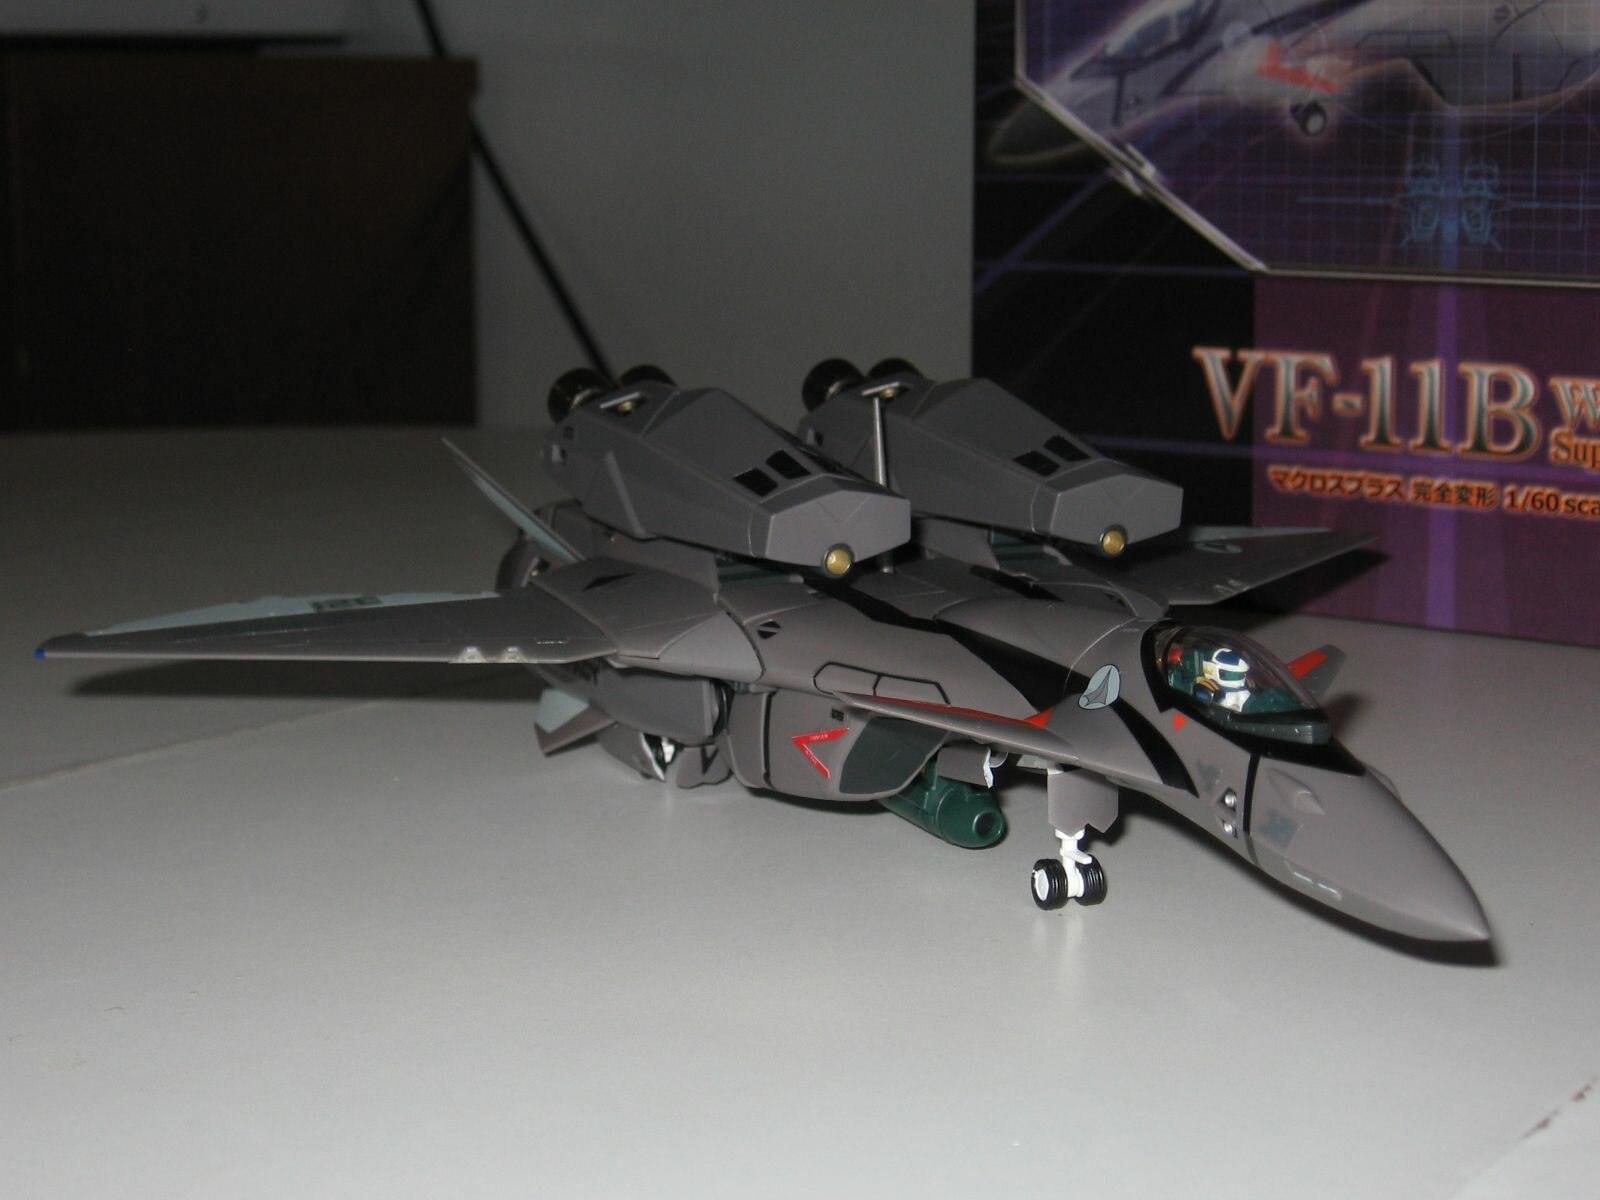 1/60 VF-11B